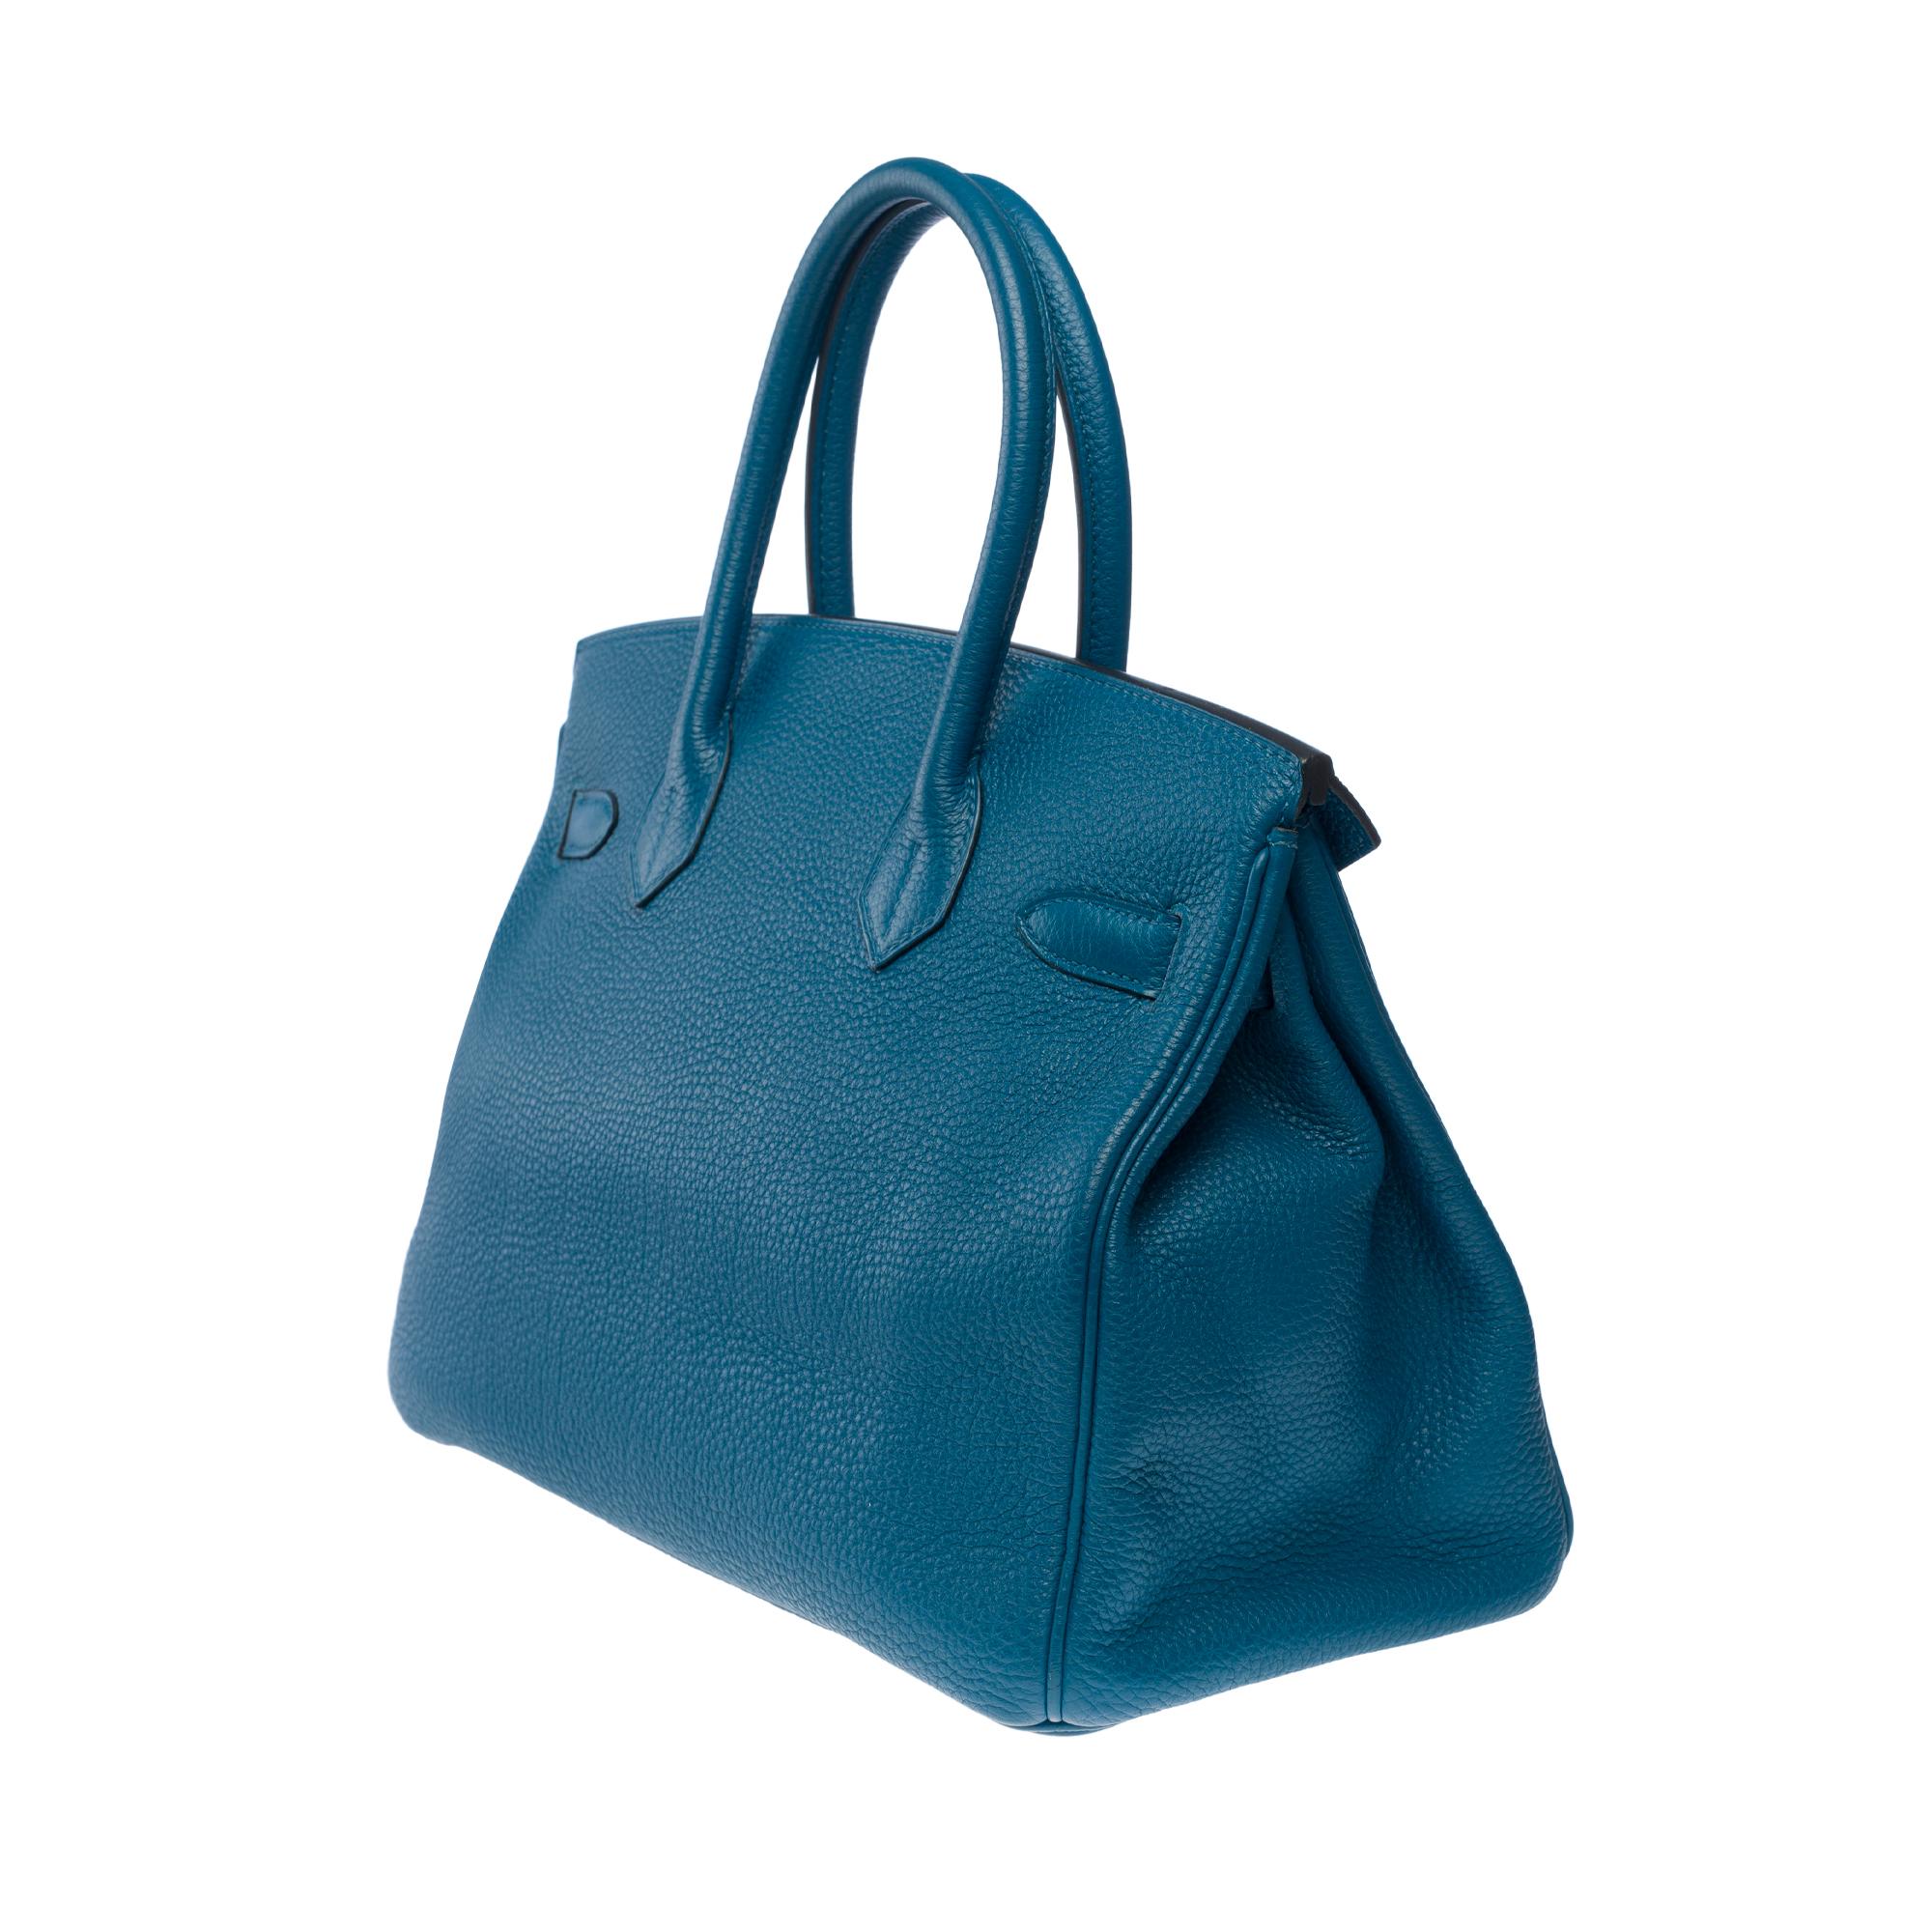 Stunning Hermes Birkin 30 handbag in Blue Togo leather, SHW For Sale 2